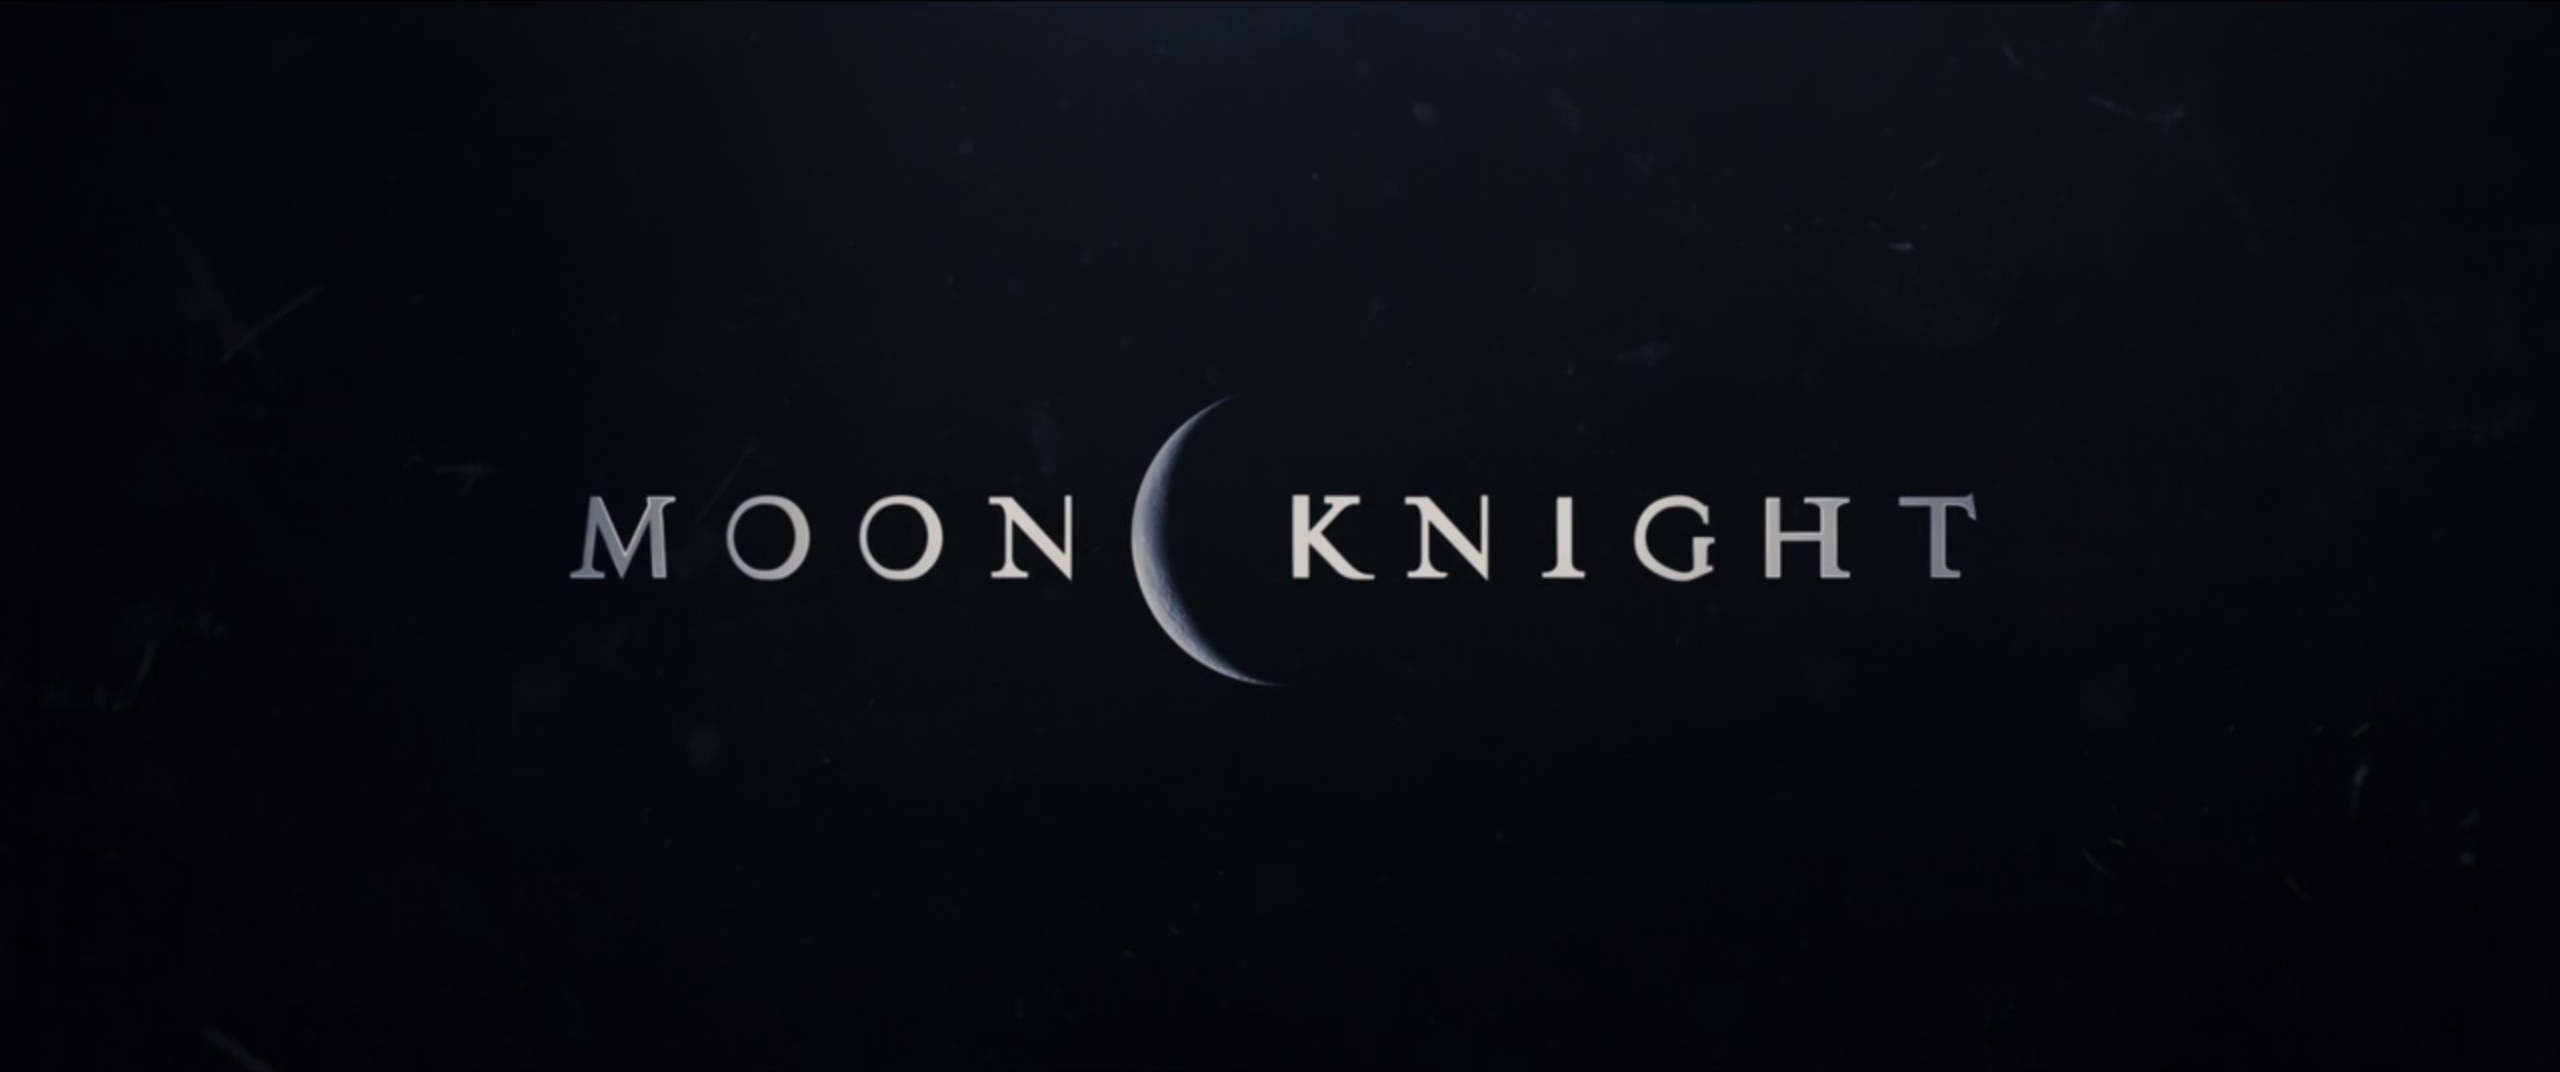 Marvel's Moon Knight: Disney+ Day 2021 Trailer Description